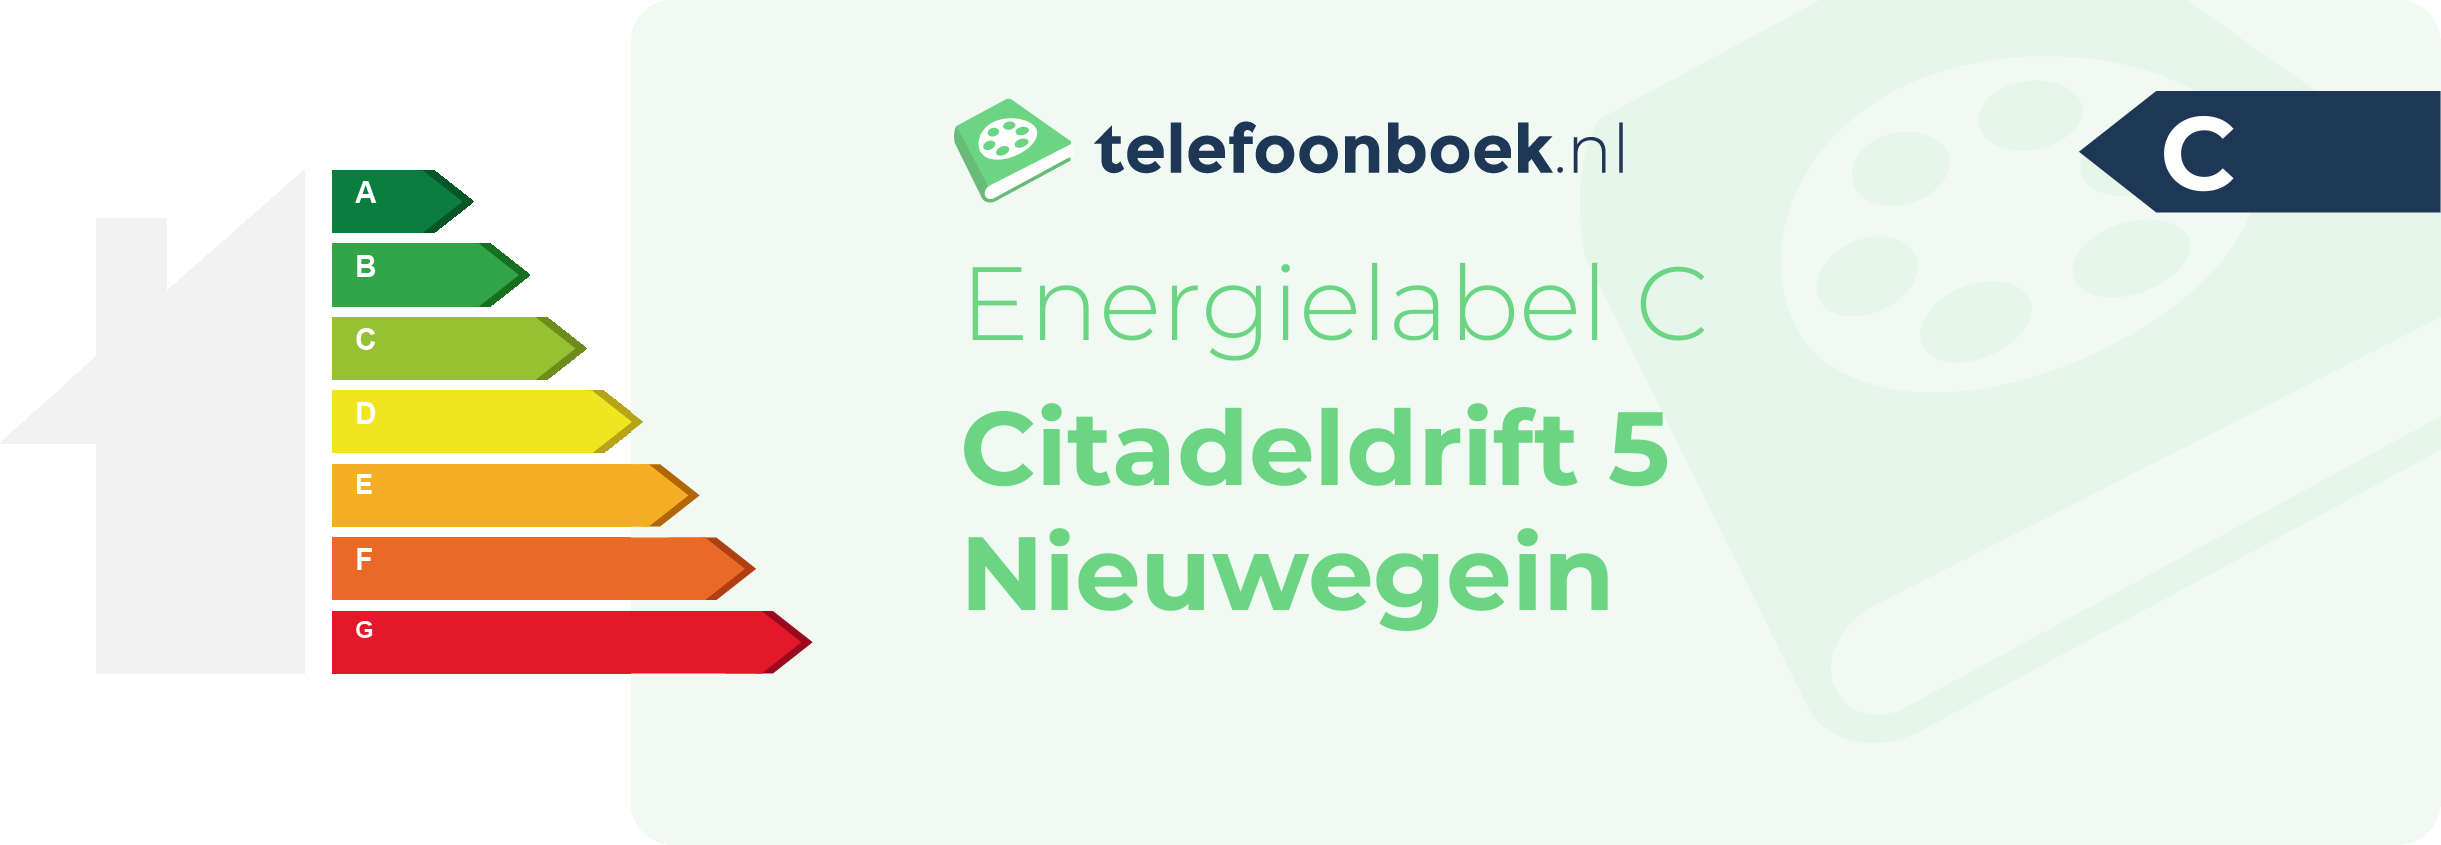 Energielabel Citadeldrift 5 Nieuwegein